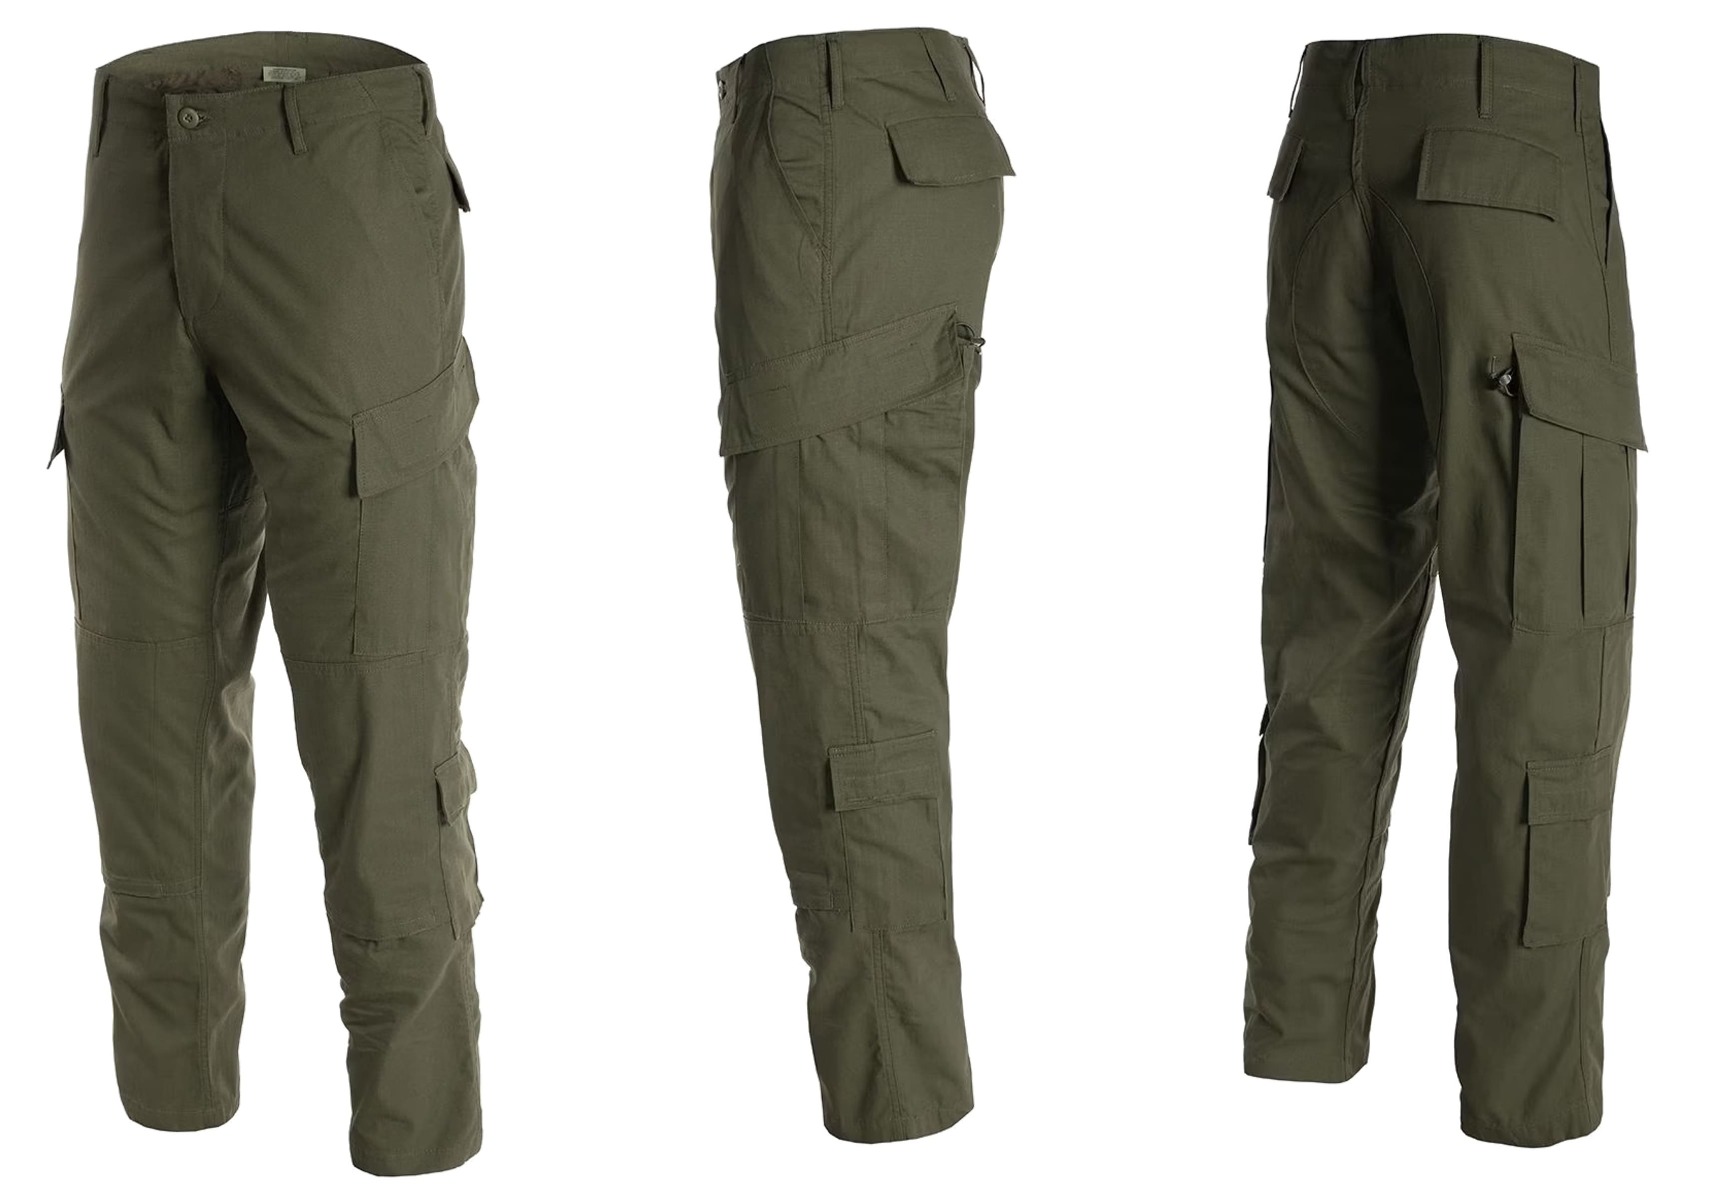 Pridobite svoj par US vojaških hlač ACU olivna barva - vrhunske taktične hlače za udobje, vzdržljivost in funkcionalnost. Primerno za vojaške operacije, pohodništvo, lov in varnostne sile. Opremite se s kakovostnim vojaškim oblačilom!